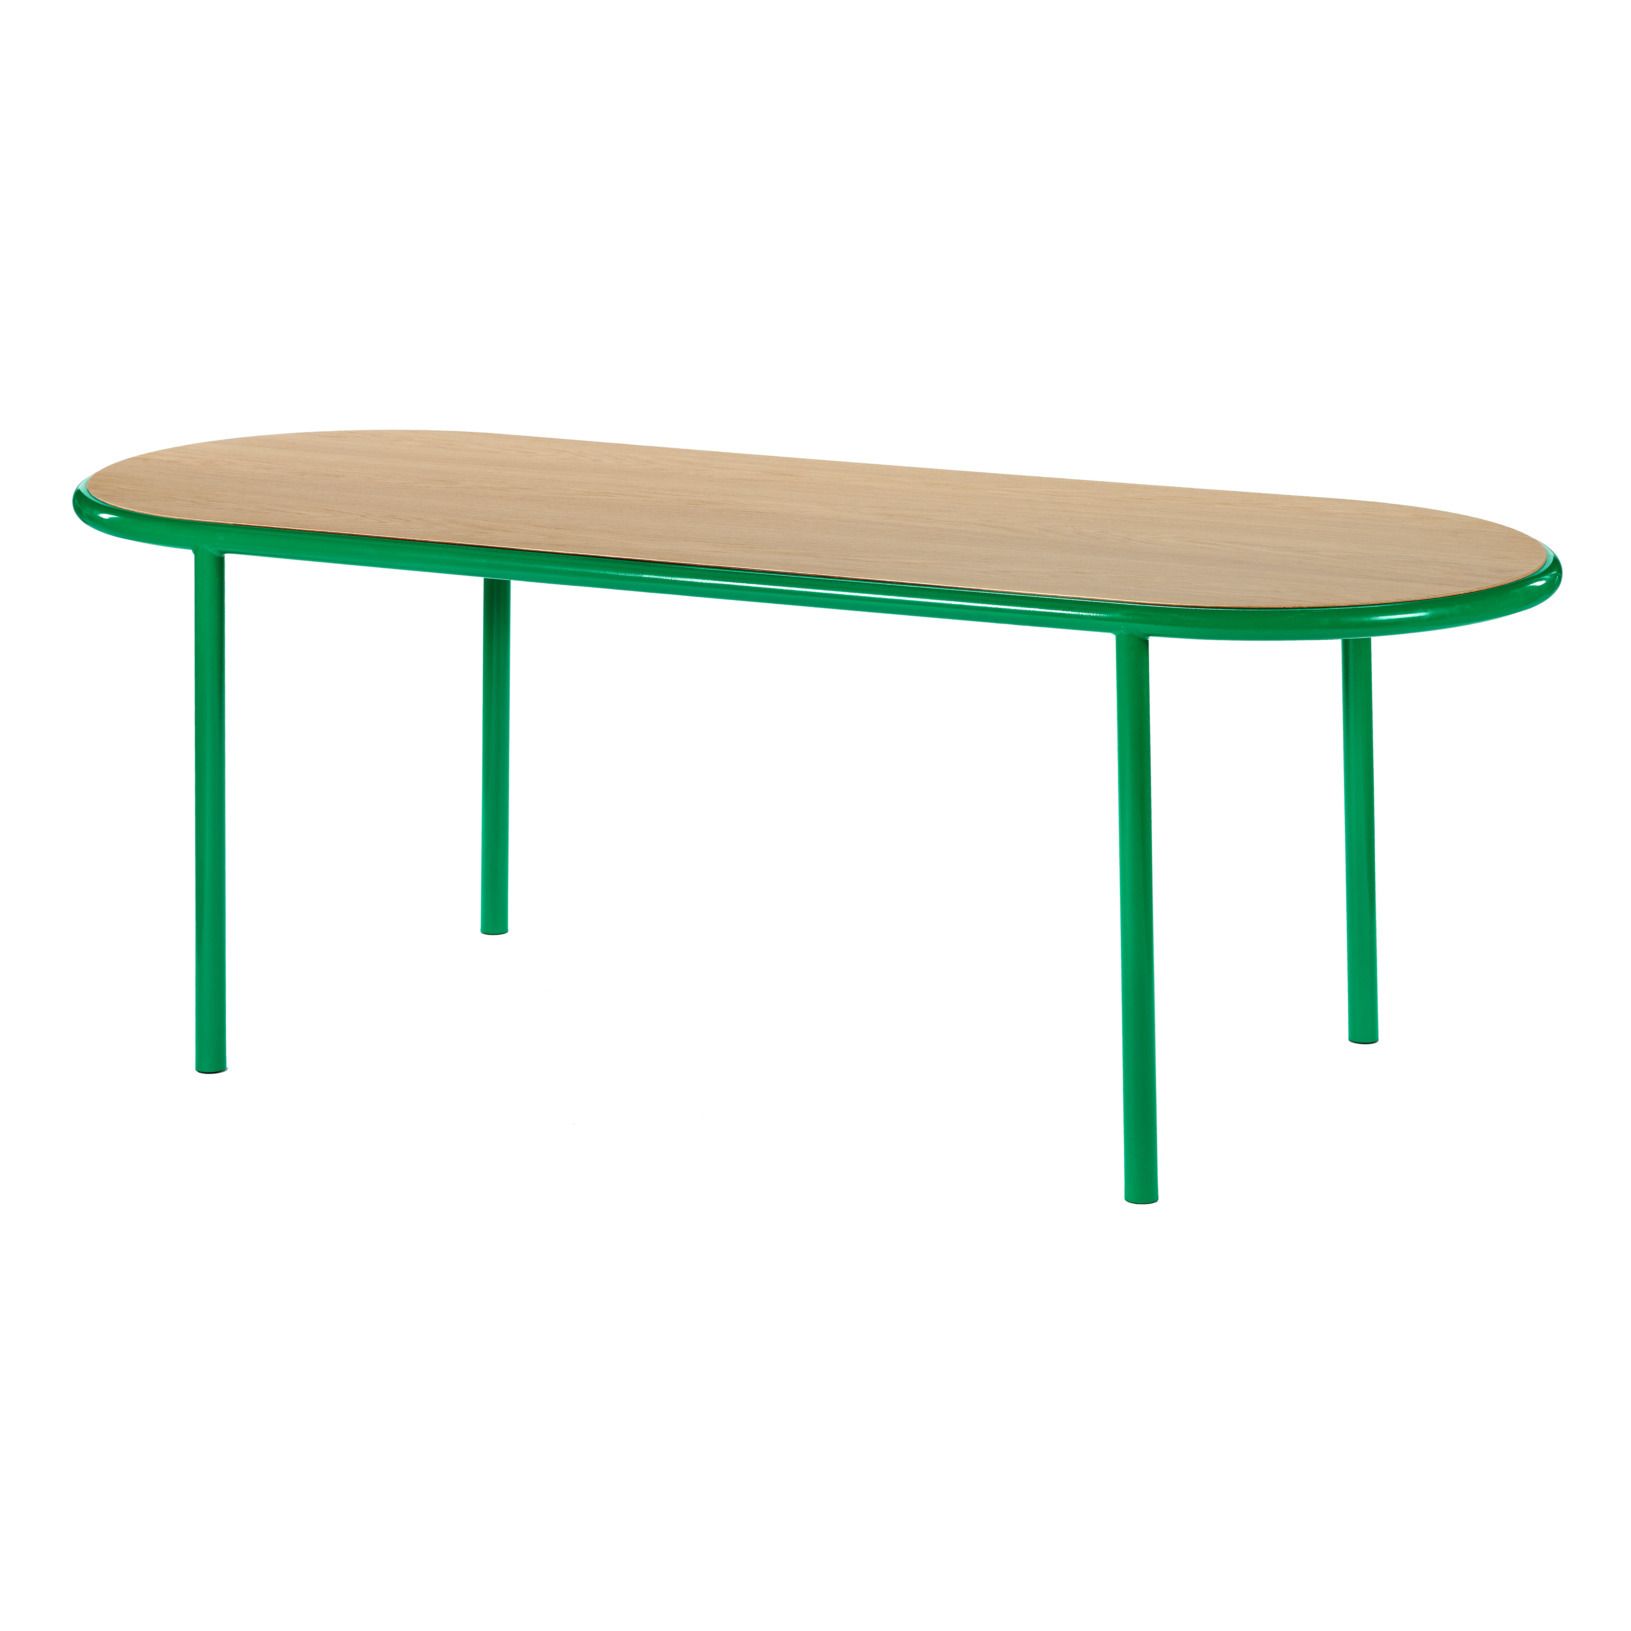 Valerie Objects - Table ovale - Muller Van Severen - Vert